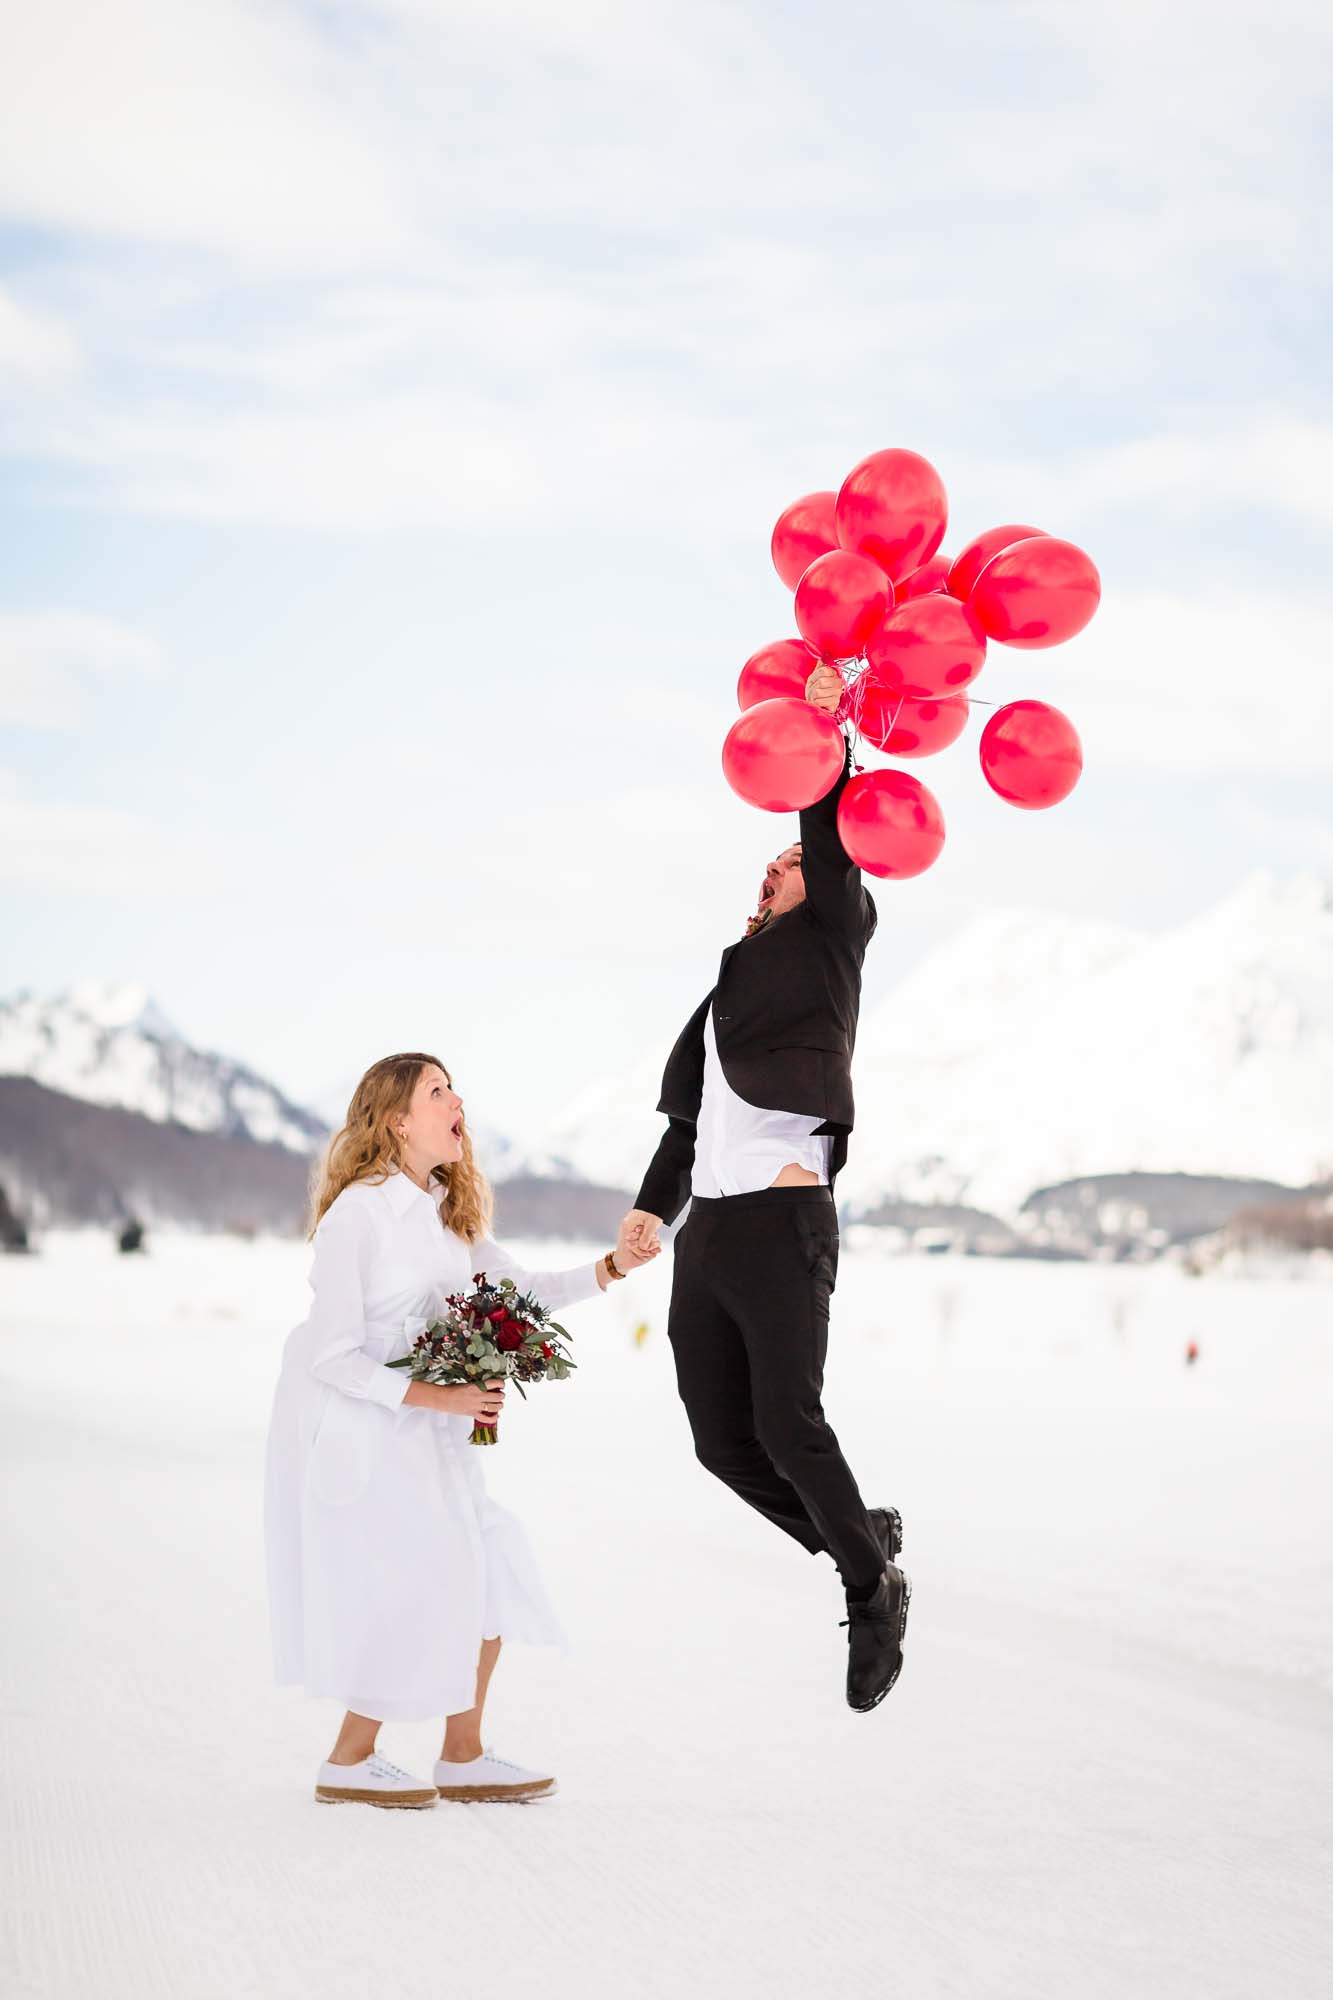 Bräutigam hebt mit Luftballone ab